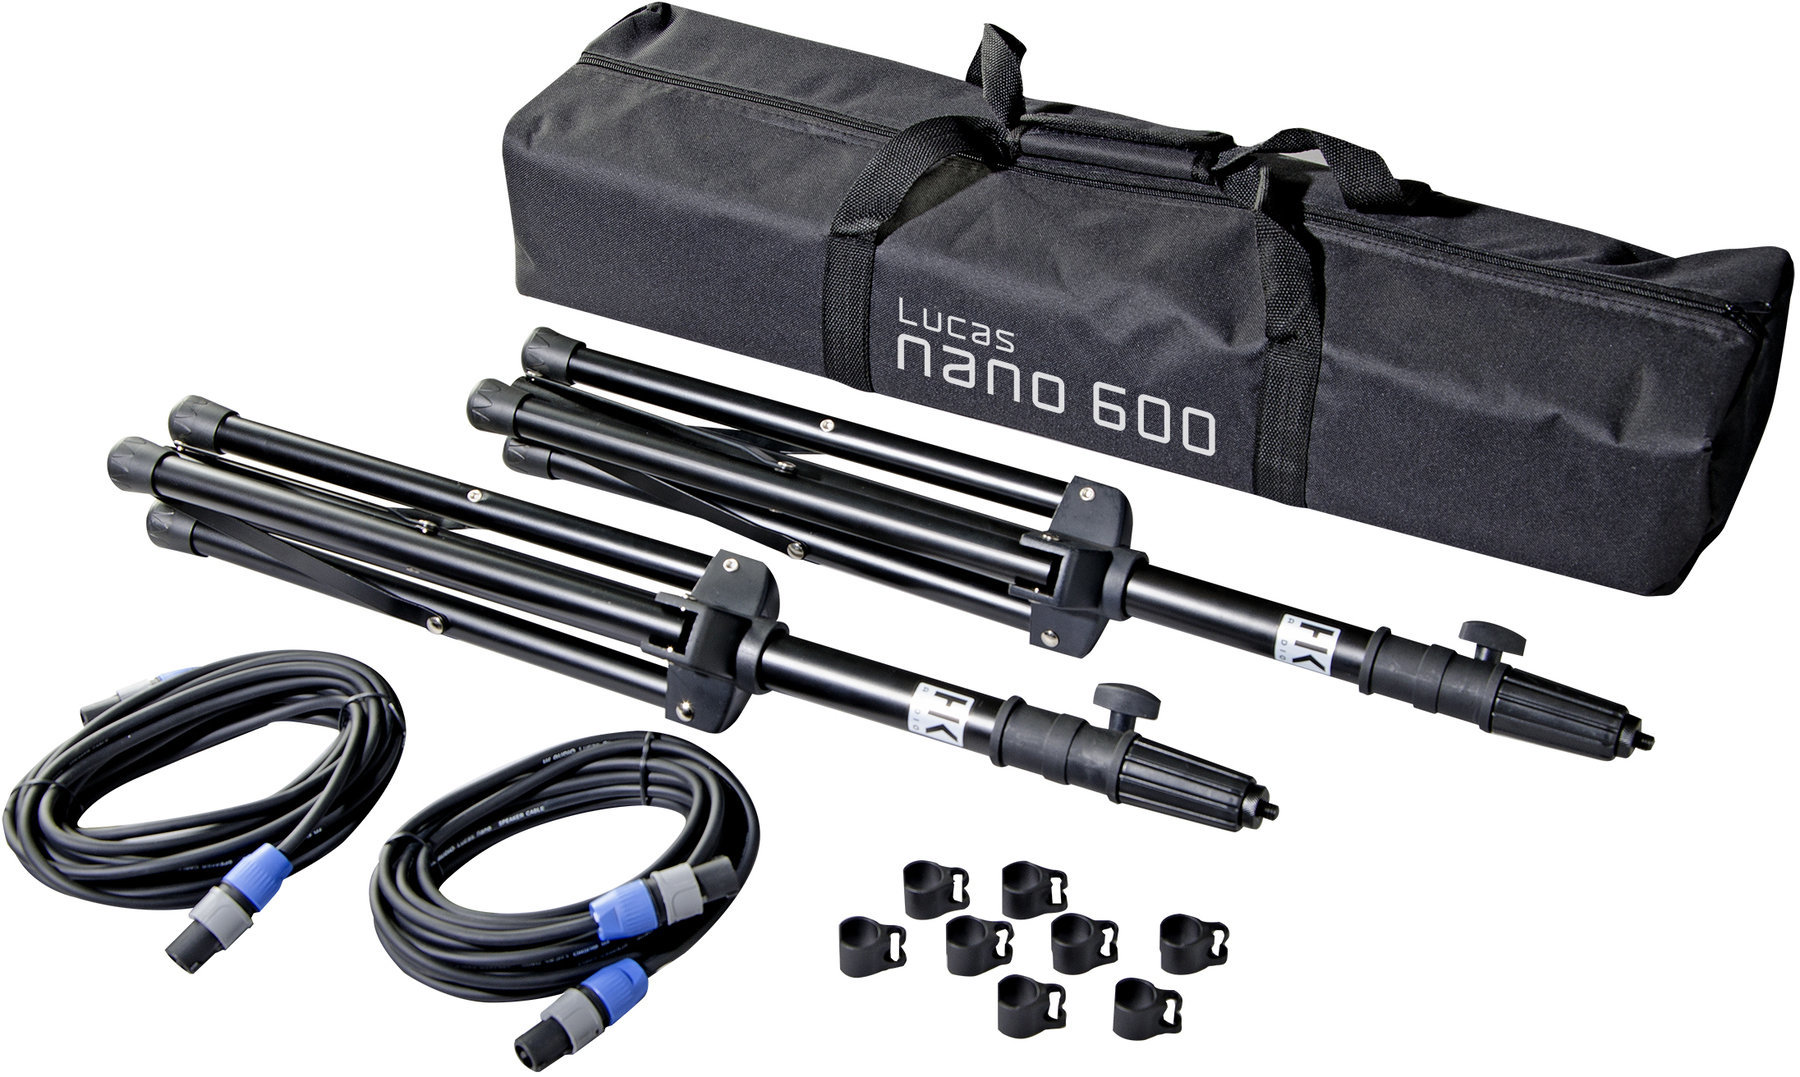 Teleskopická stojanová tyč HK Audio L.U.C.A.S. NANO 600 Stereo Stand Add On